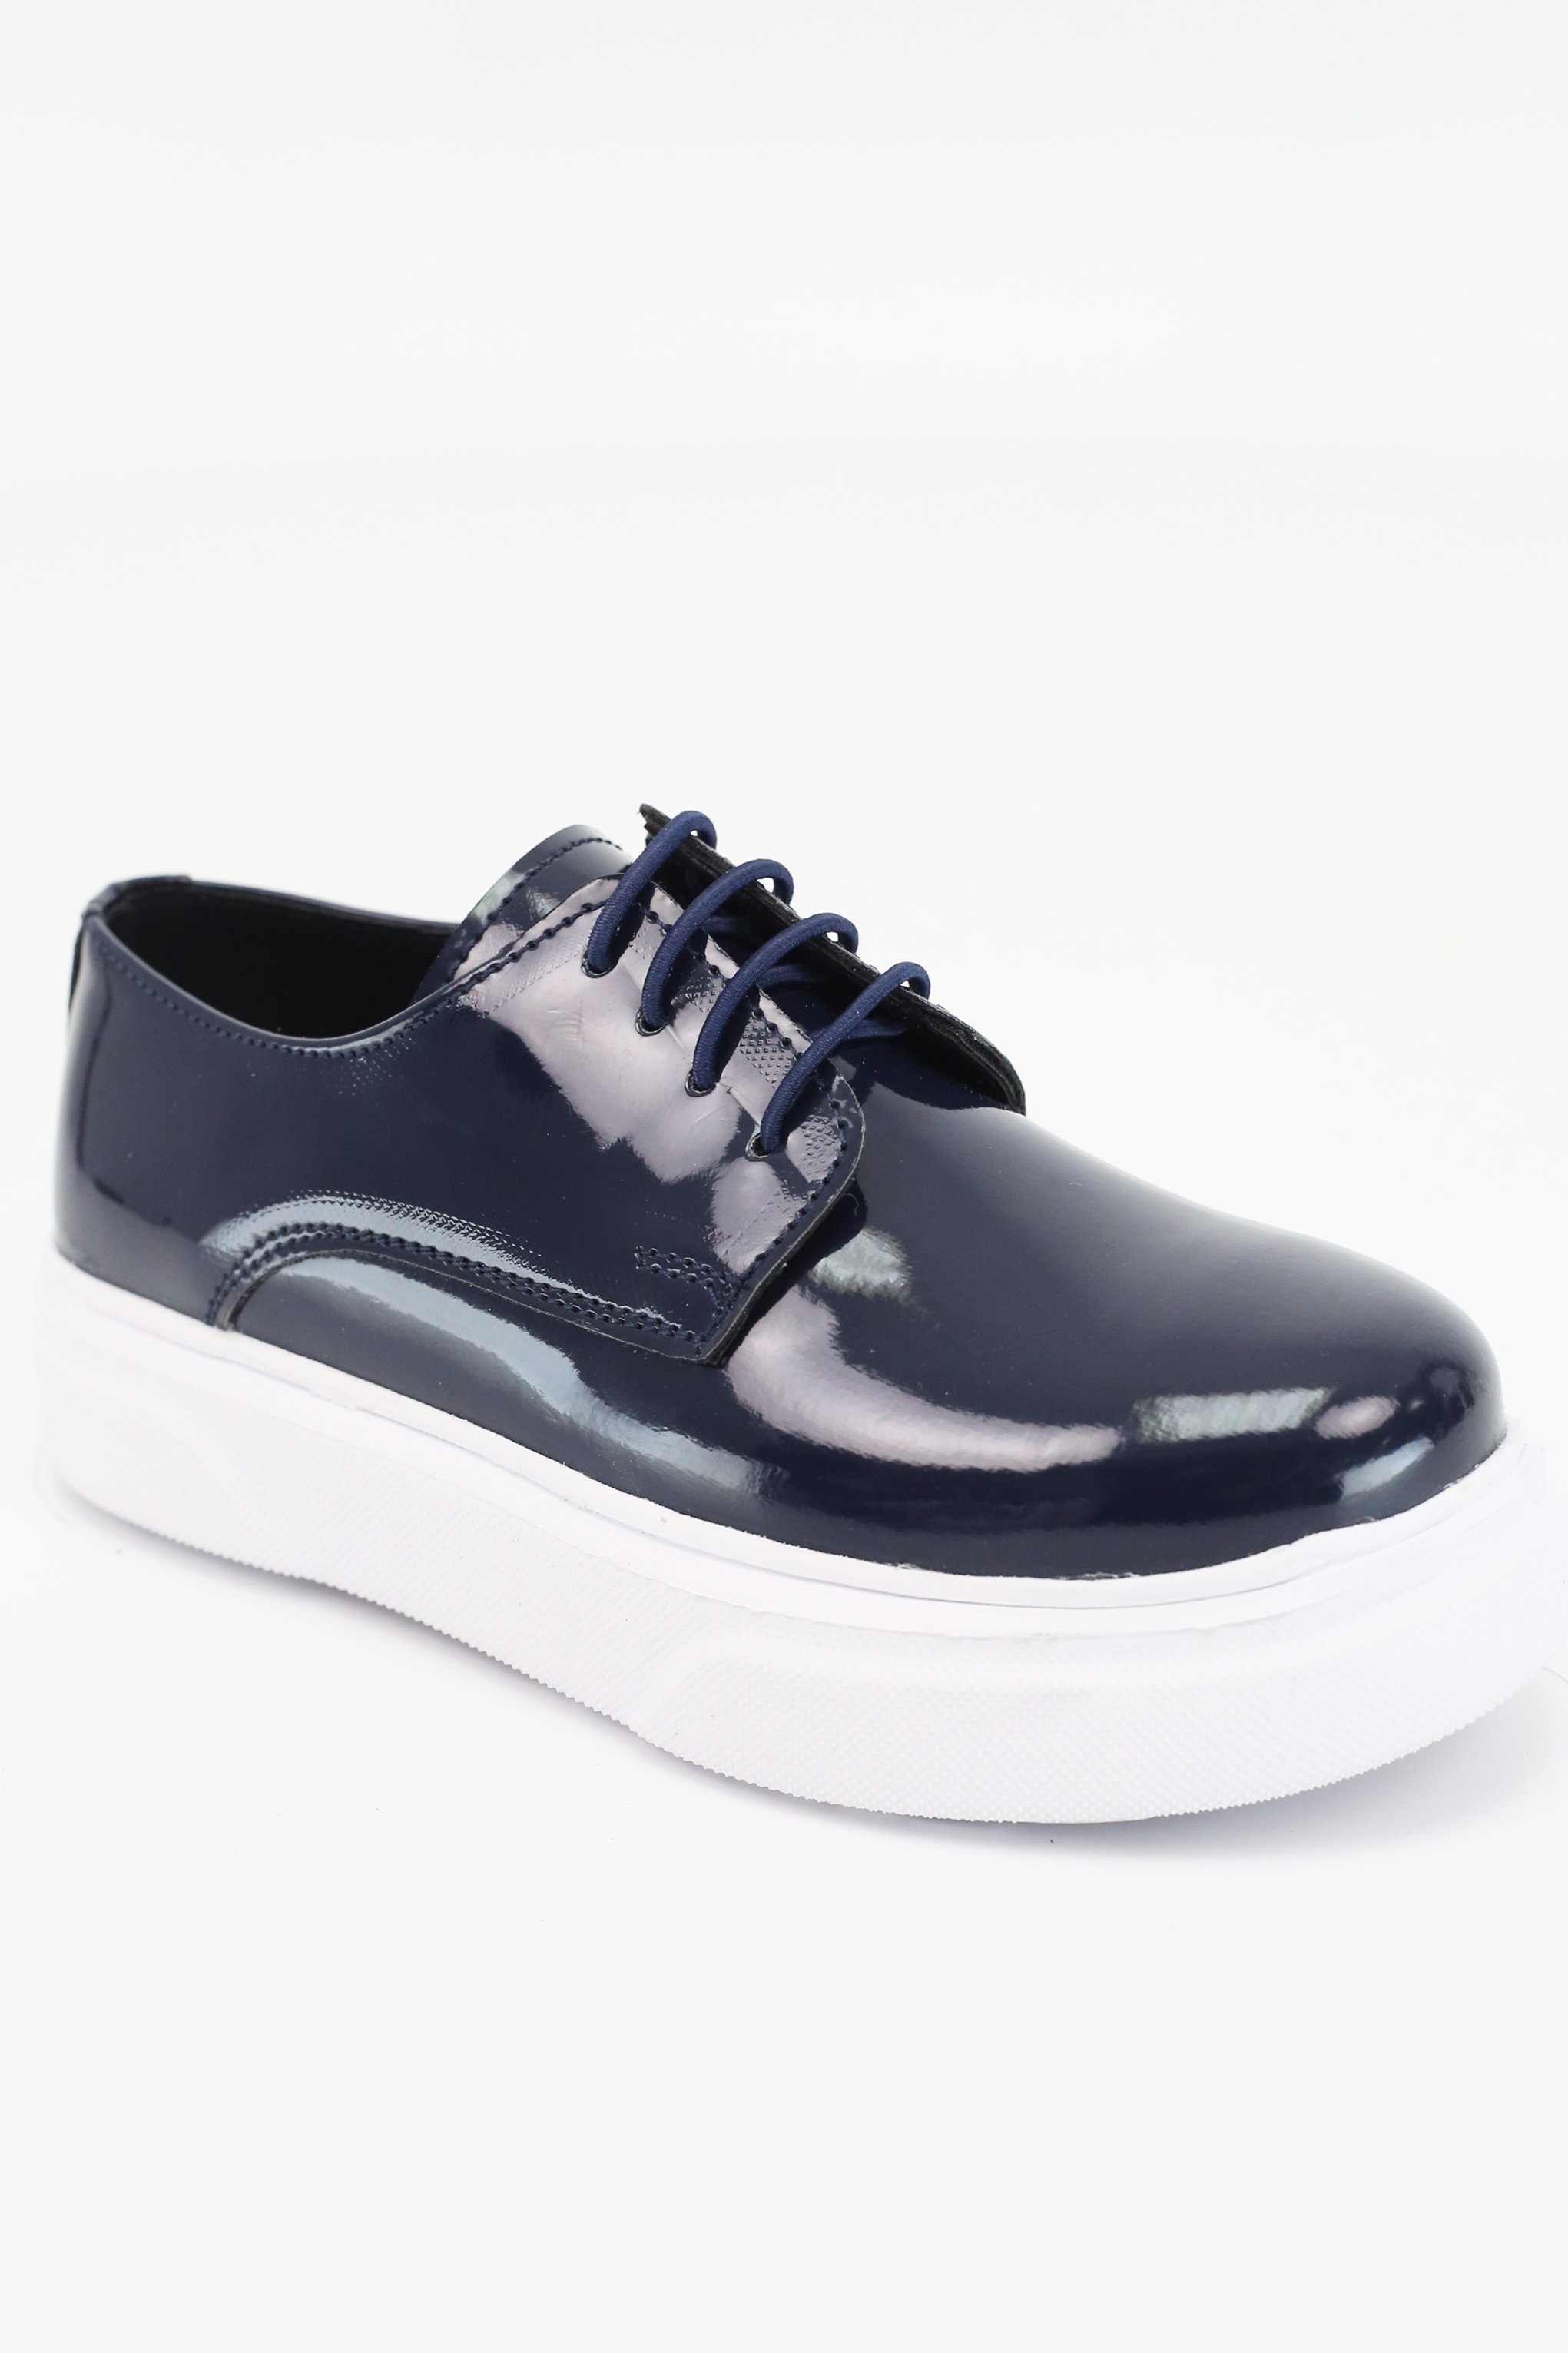 SIRRI Schwarze Slip-On Lackschuhe für Jungen, Sneaker im Gibson-Design für formelle und Freizeitkleidung - Navy blau